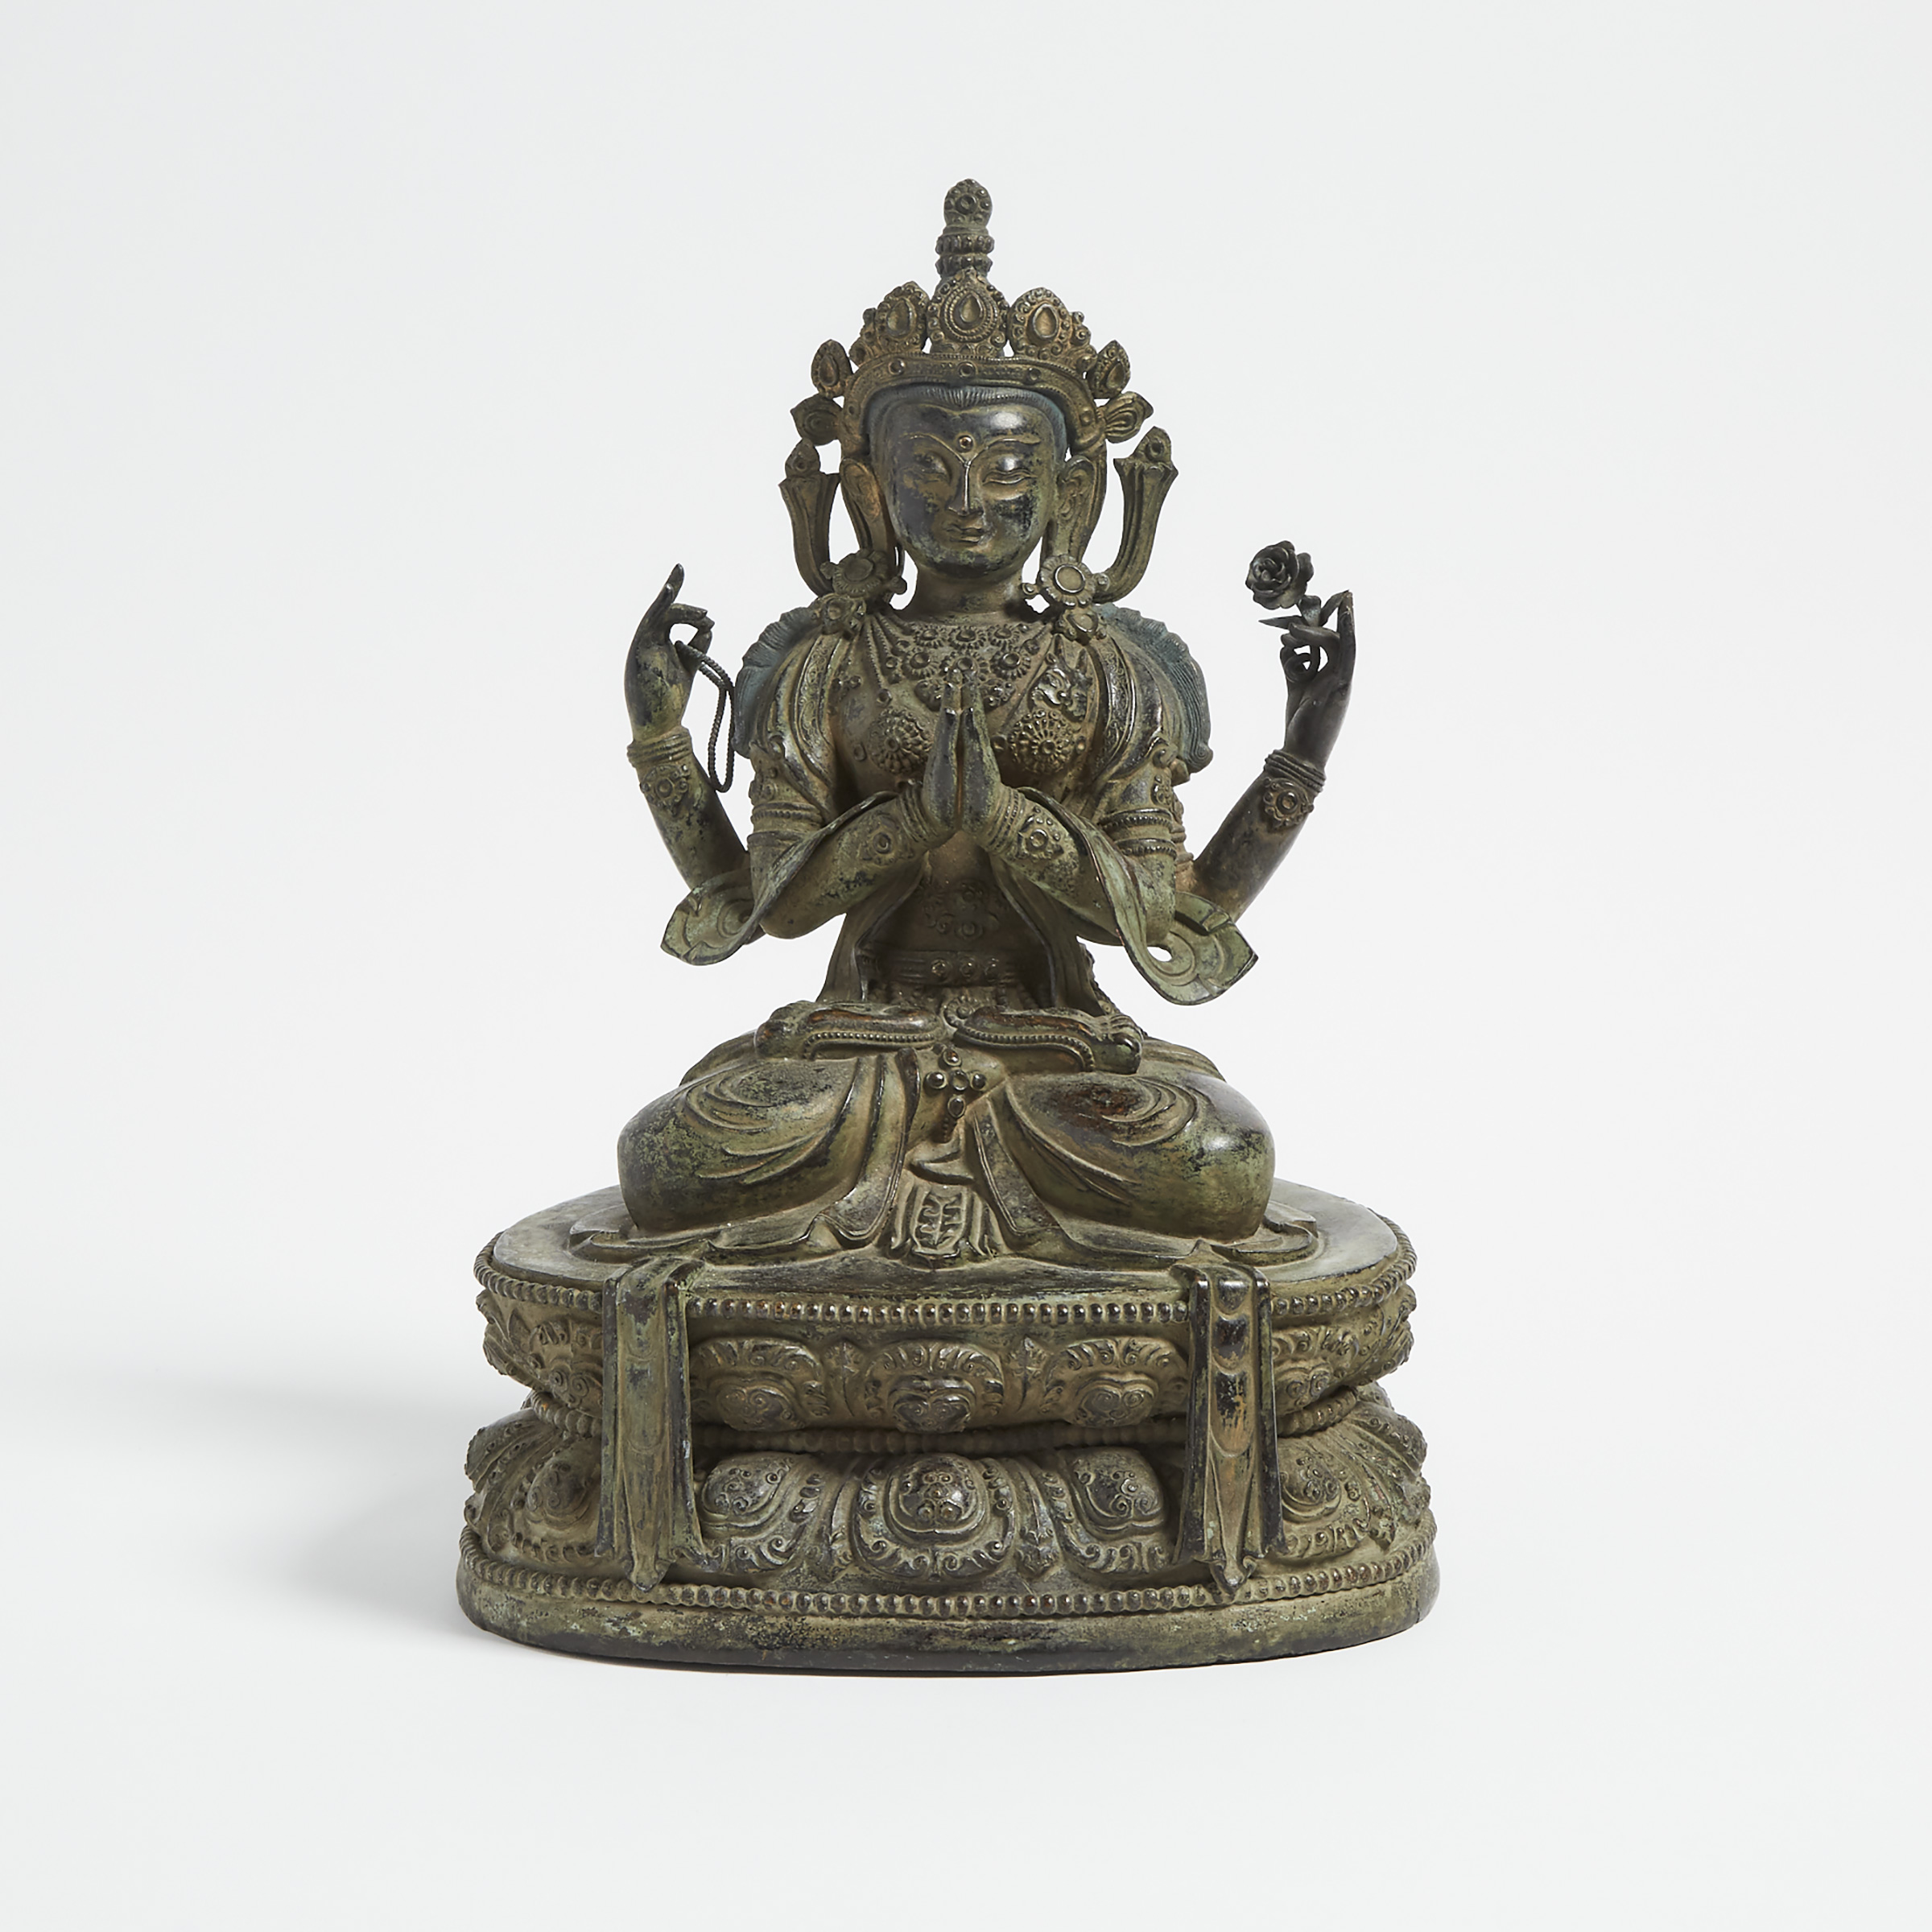 A Sino-Tibetan Bronze Seated Figure of Shadakshari Lokeshvara Buddha, 18th Century or Later